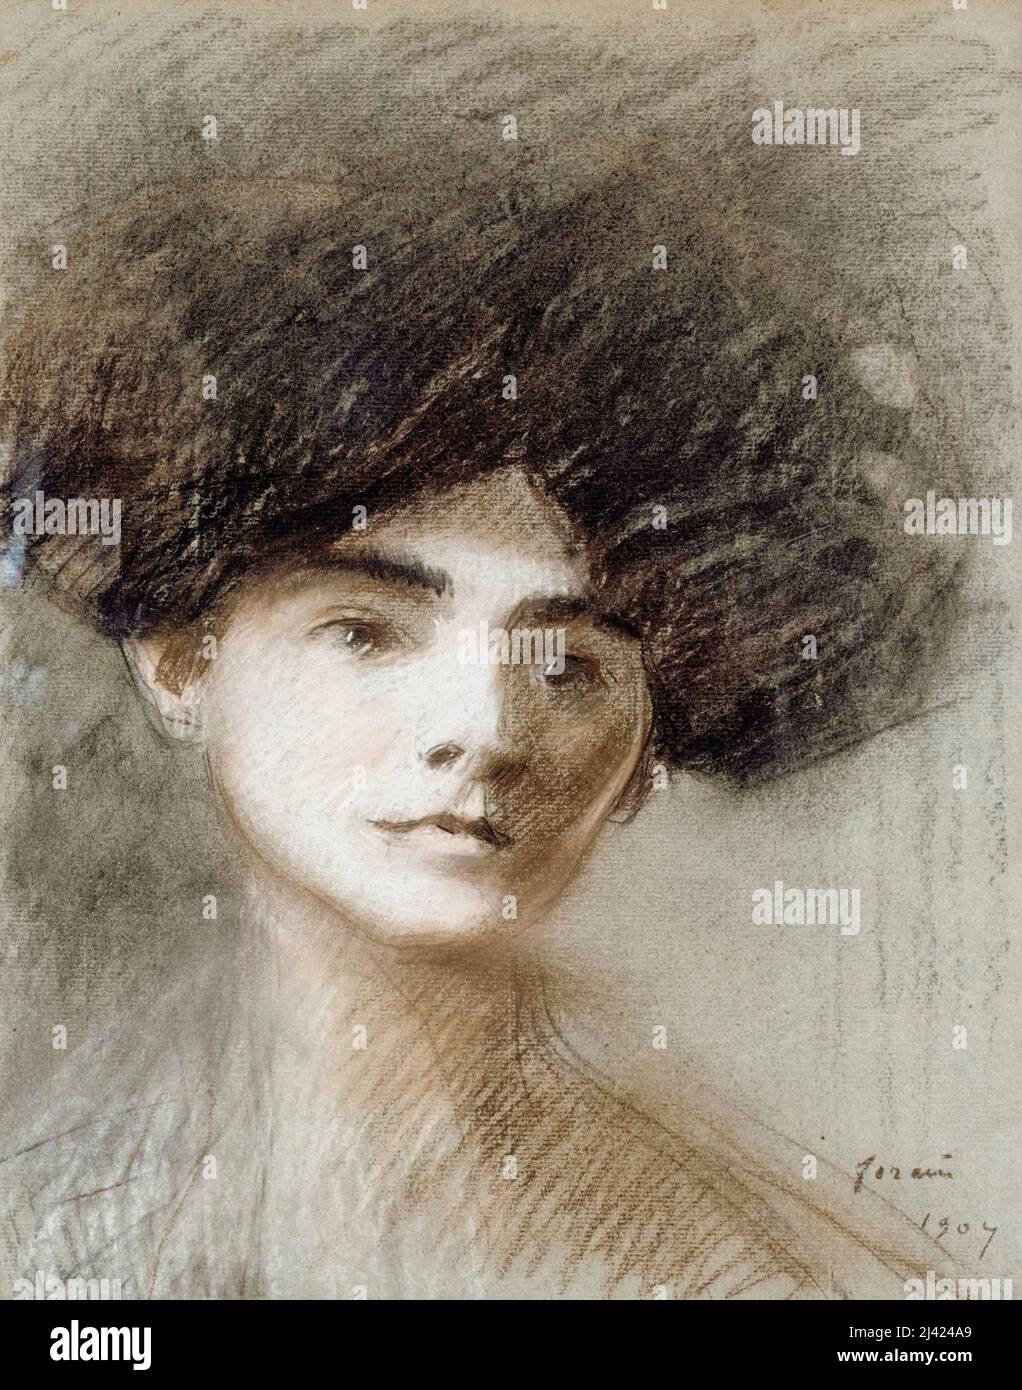 Madame Henri de Régnier, née Marie de Hérédia, (1875-1963), French novelist and poet, portrait drawing by Jean-Louis Forain, 1907 Stock Photo